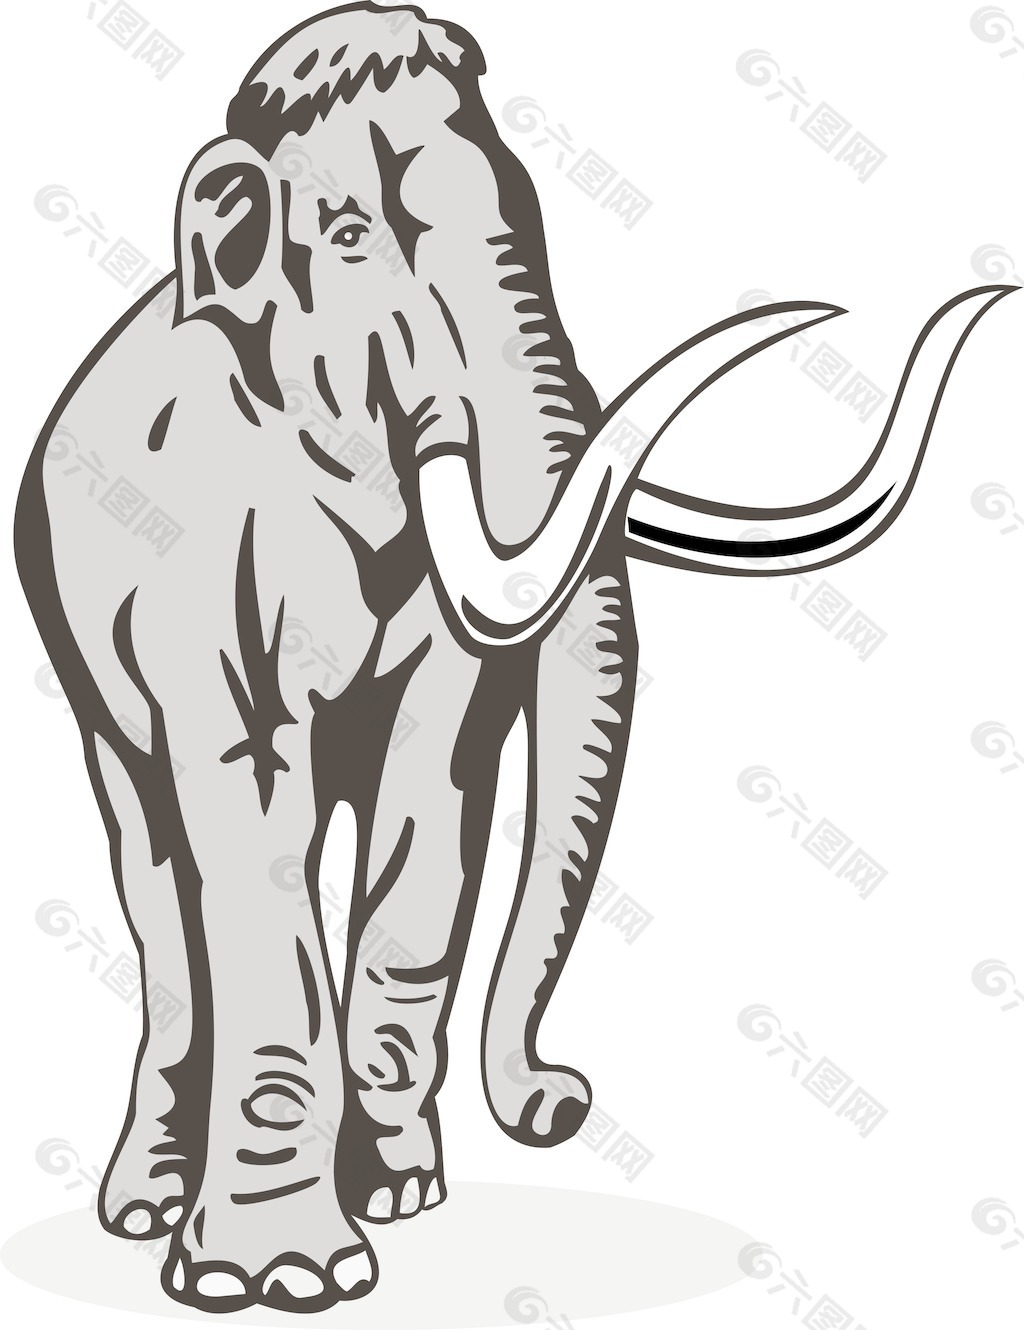 猛犸象的画法图片